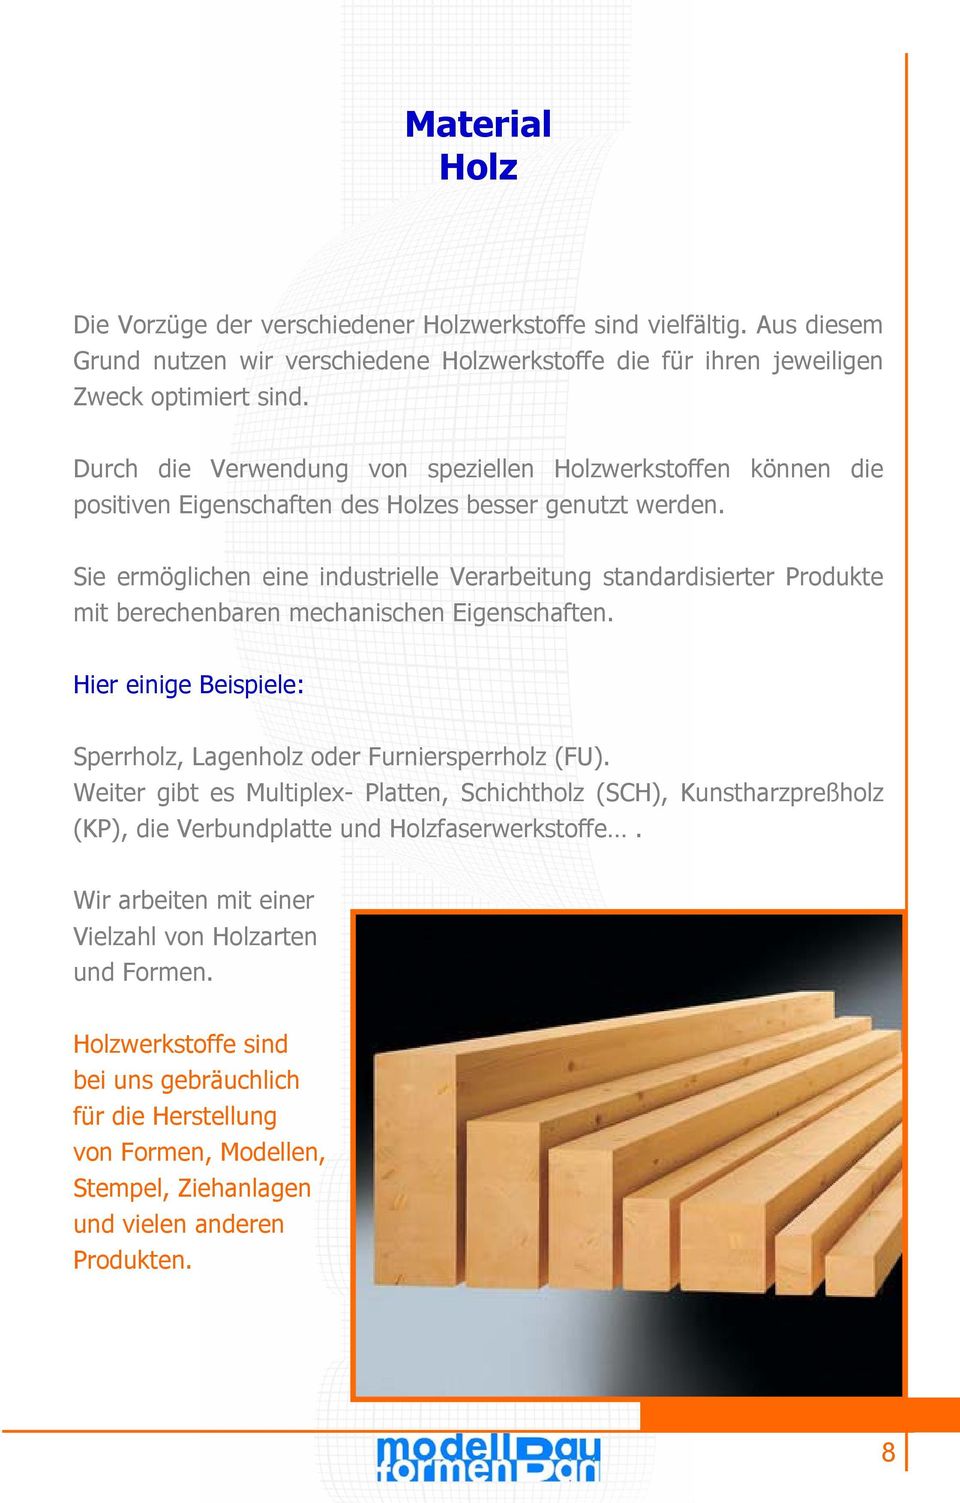 Sie ermöglichen eine industrielle Verarbeitung standardisierter Produkte mit berechenbaren mechanischen Eigenschaften. Hier einige Beispiele: Sperrholz, Lagenholz oder Furniersperrholz (FU).